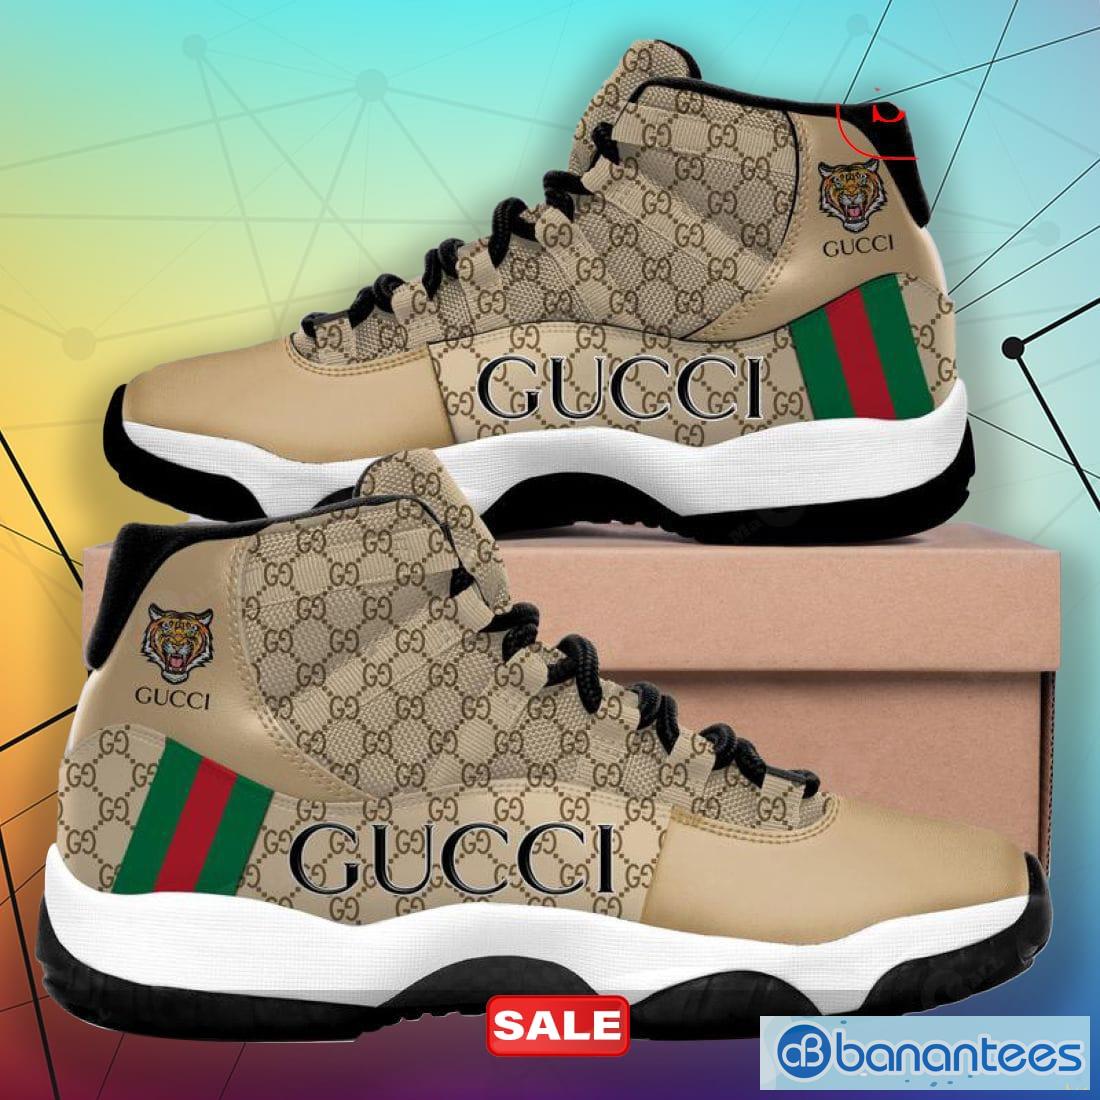 Gucci Jordans 